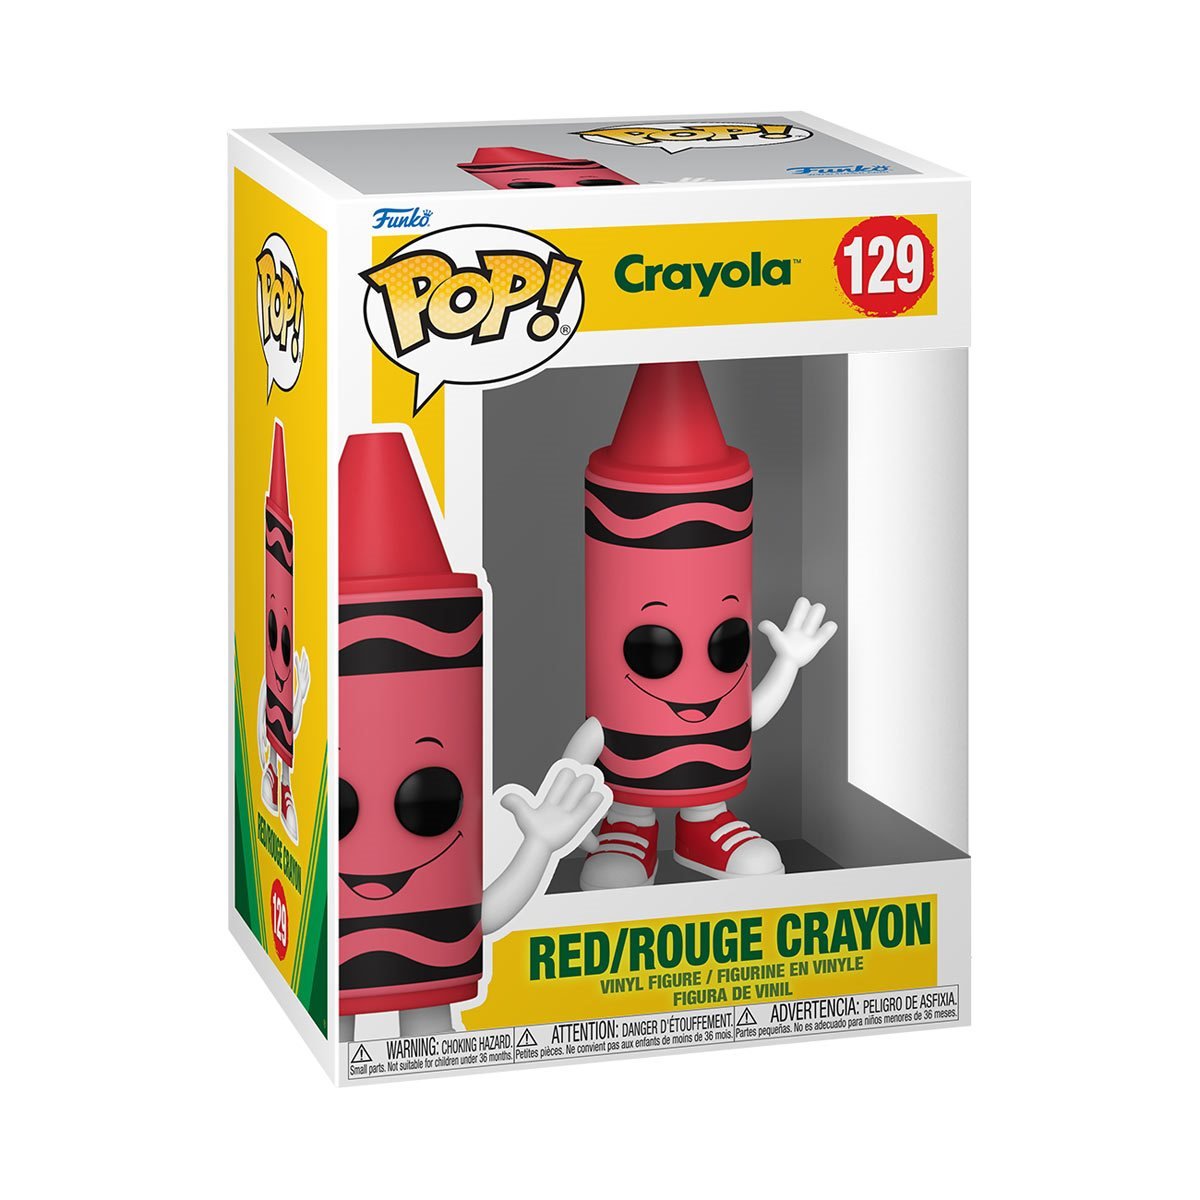 Funko Pop! Crayola Red Crayon Vinyl Figure #129